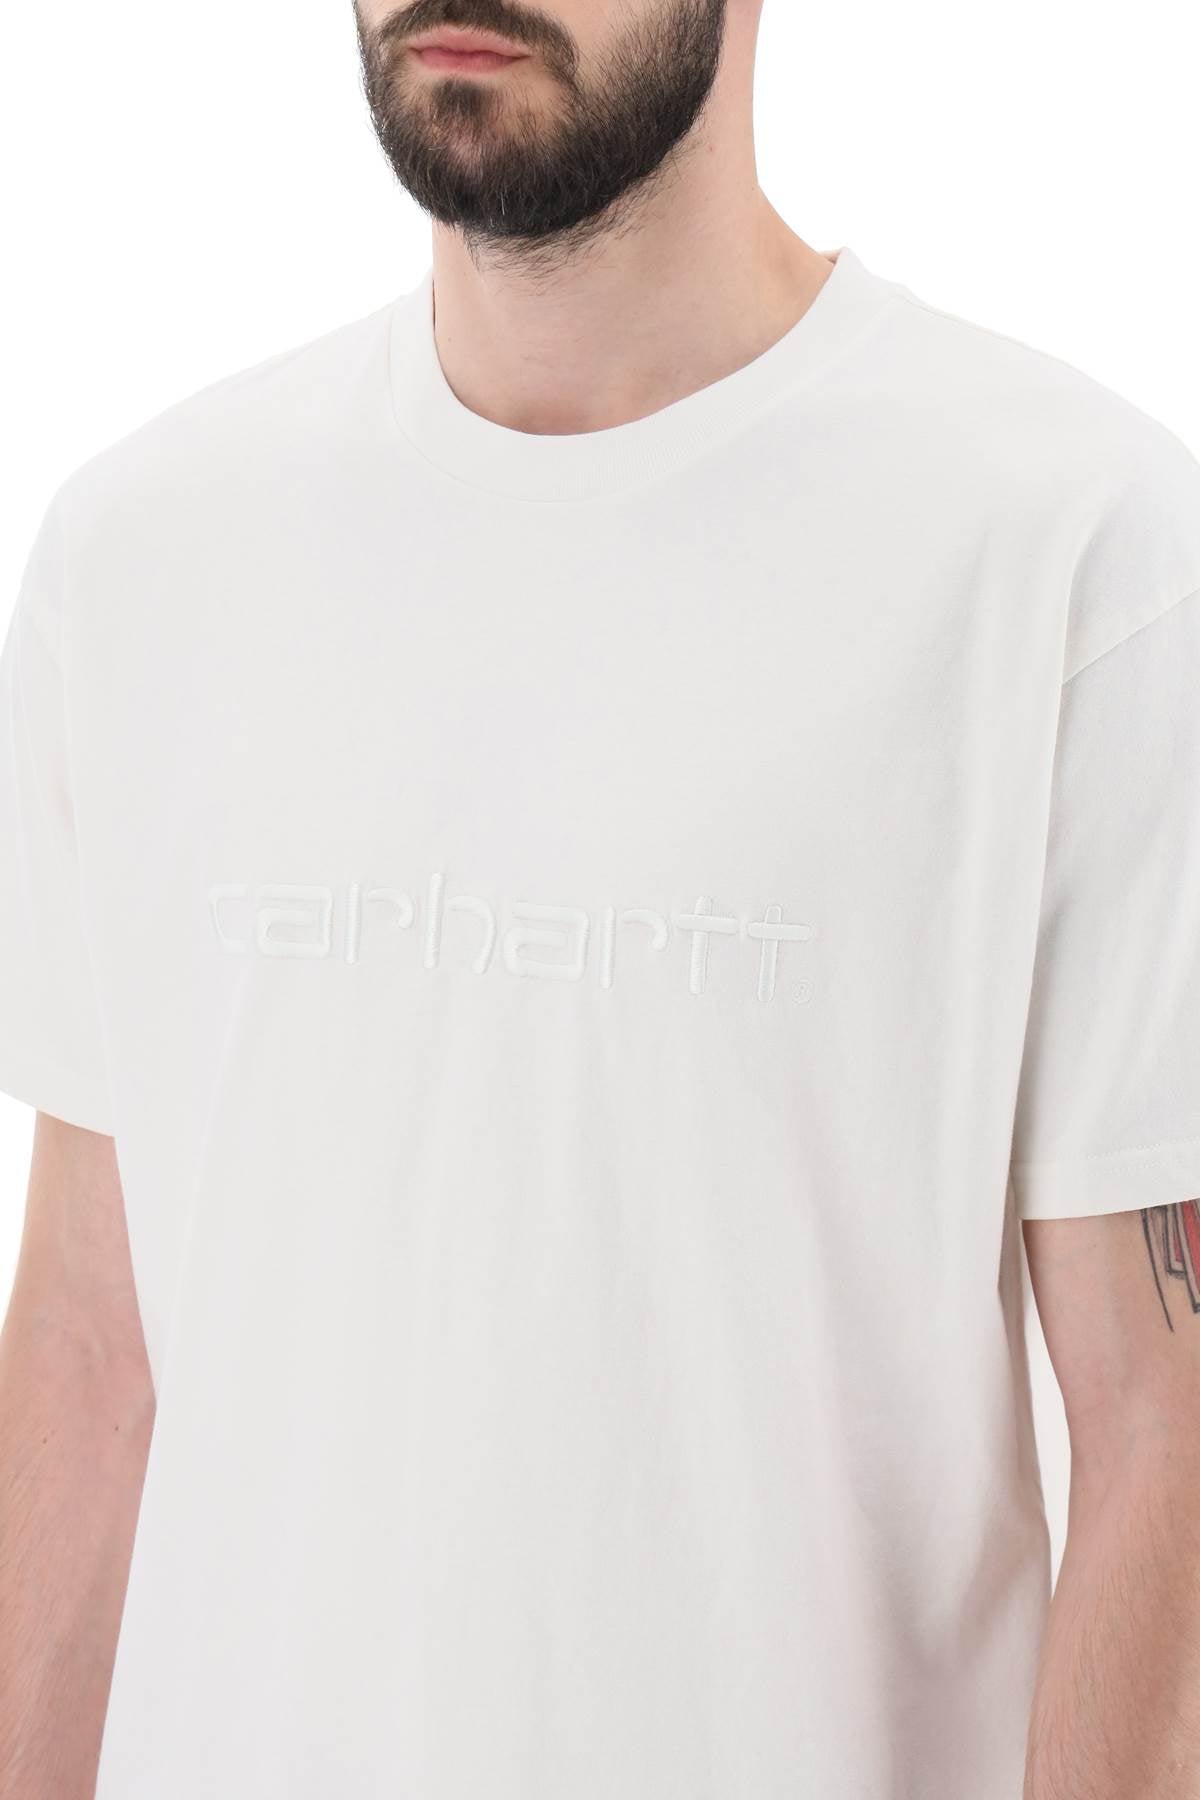 Carhartt Wip Carhartt wip duster t-shirt